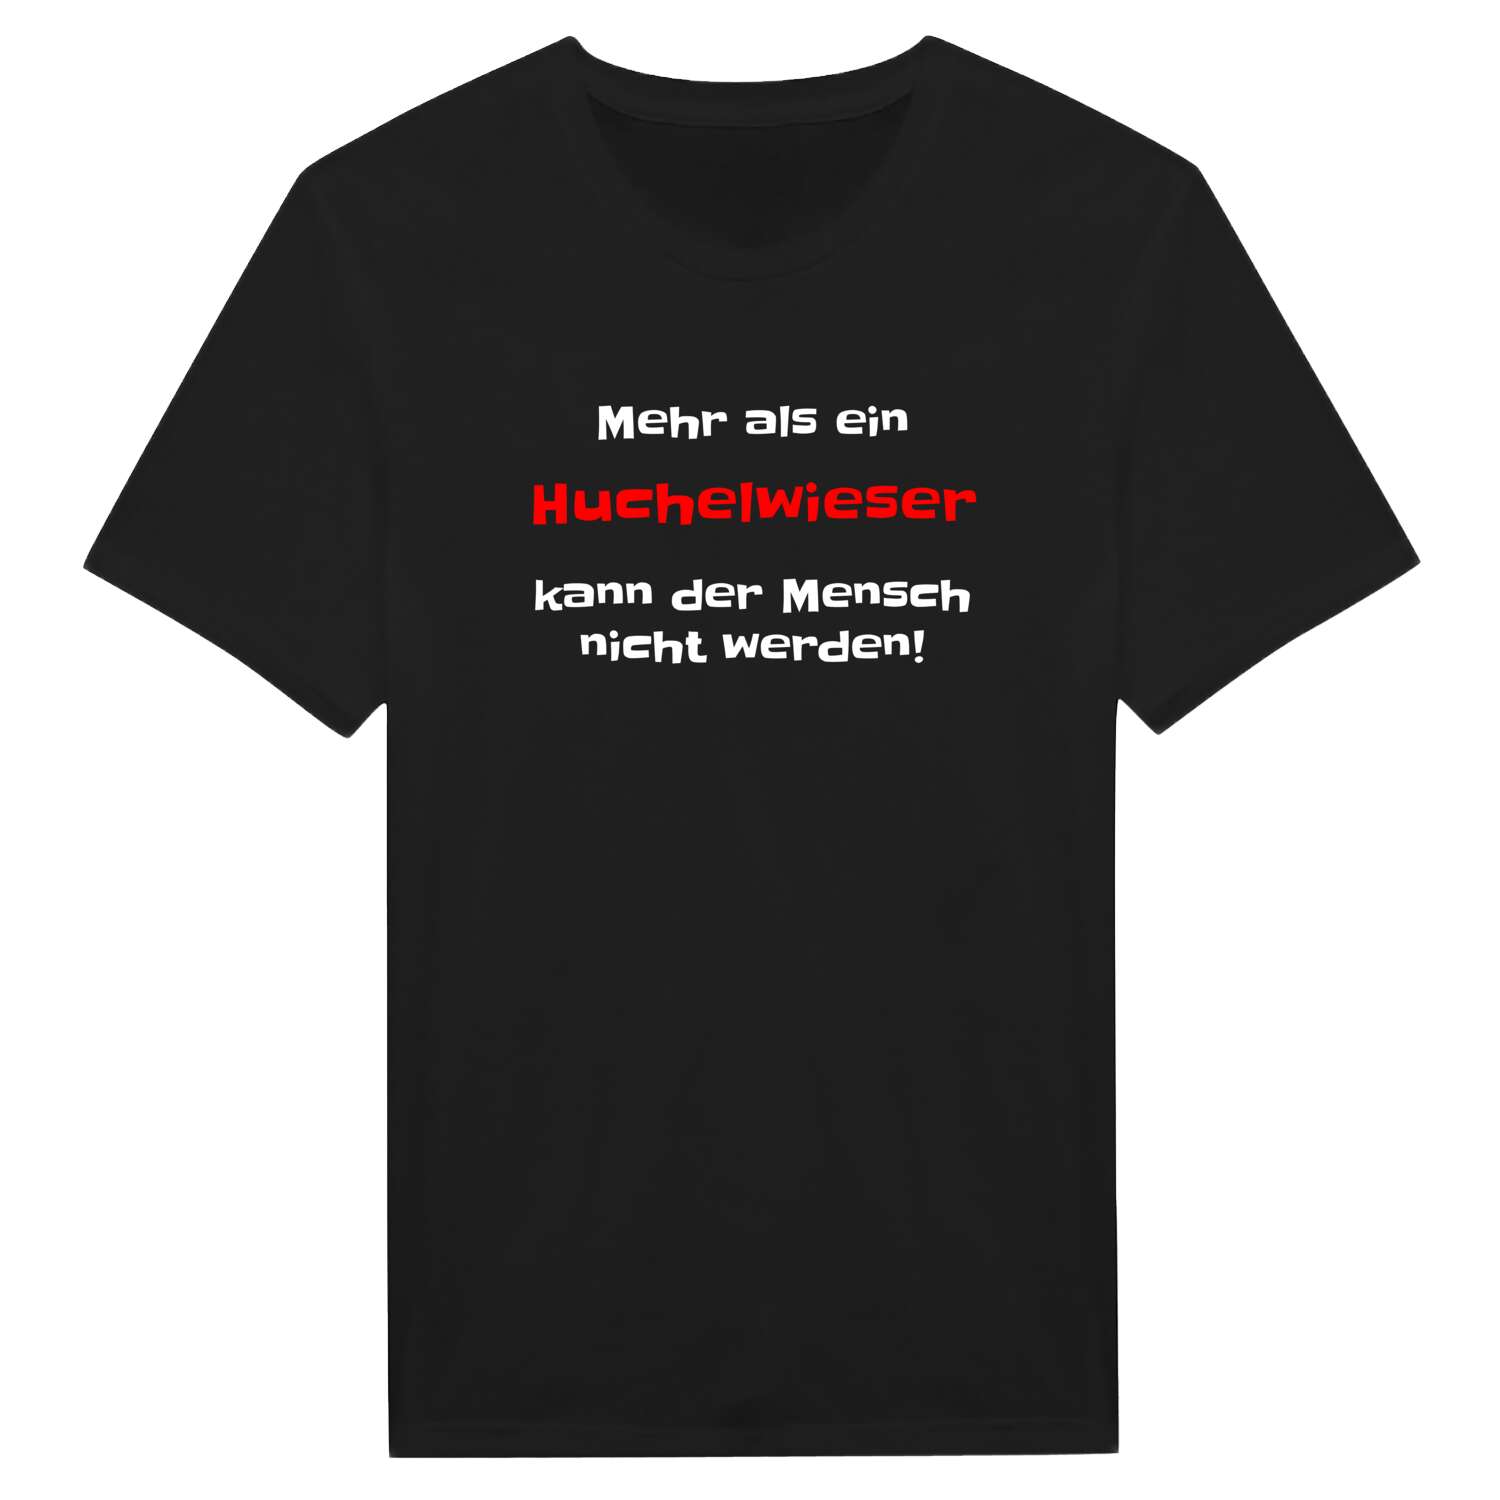 Huchelwies T-Shirt »Mehr als ein«